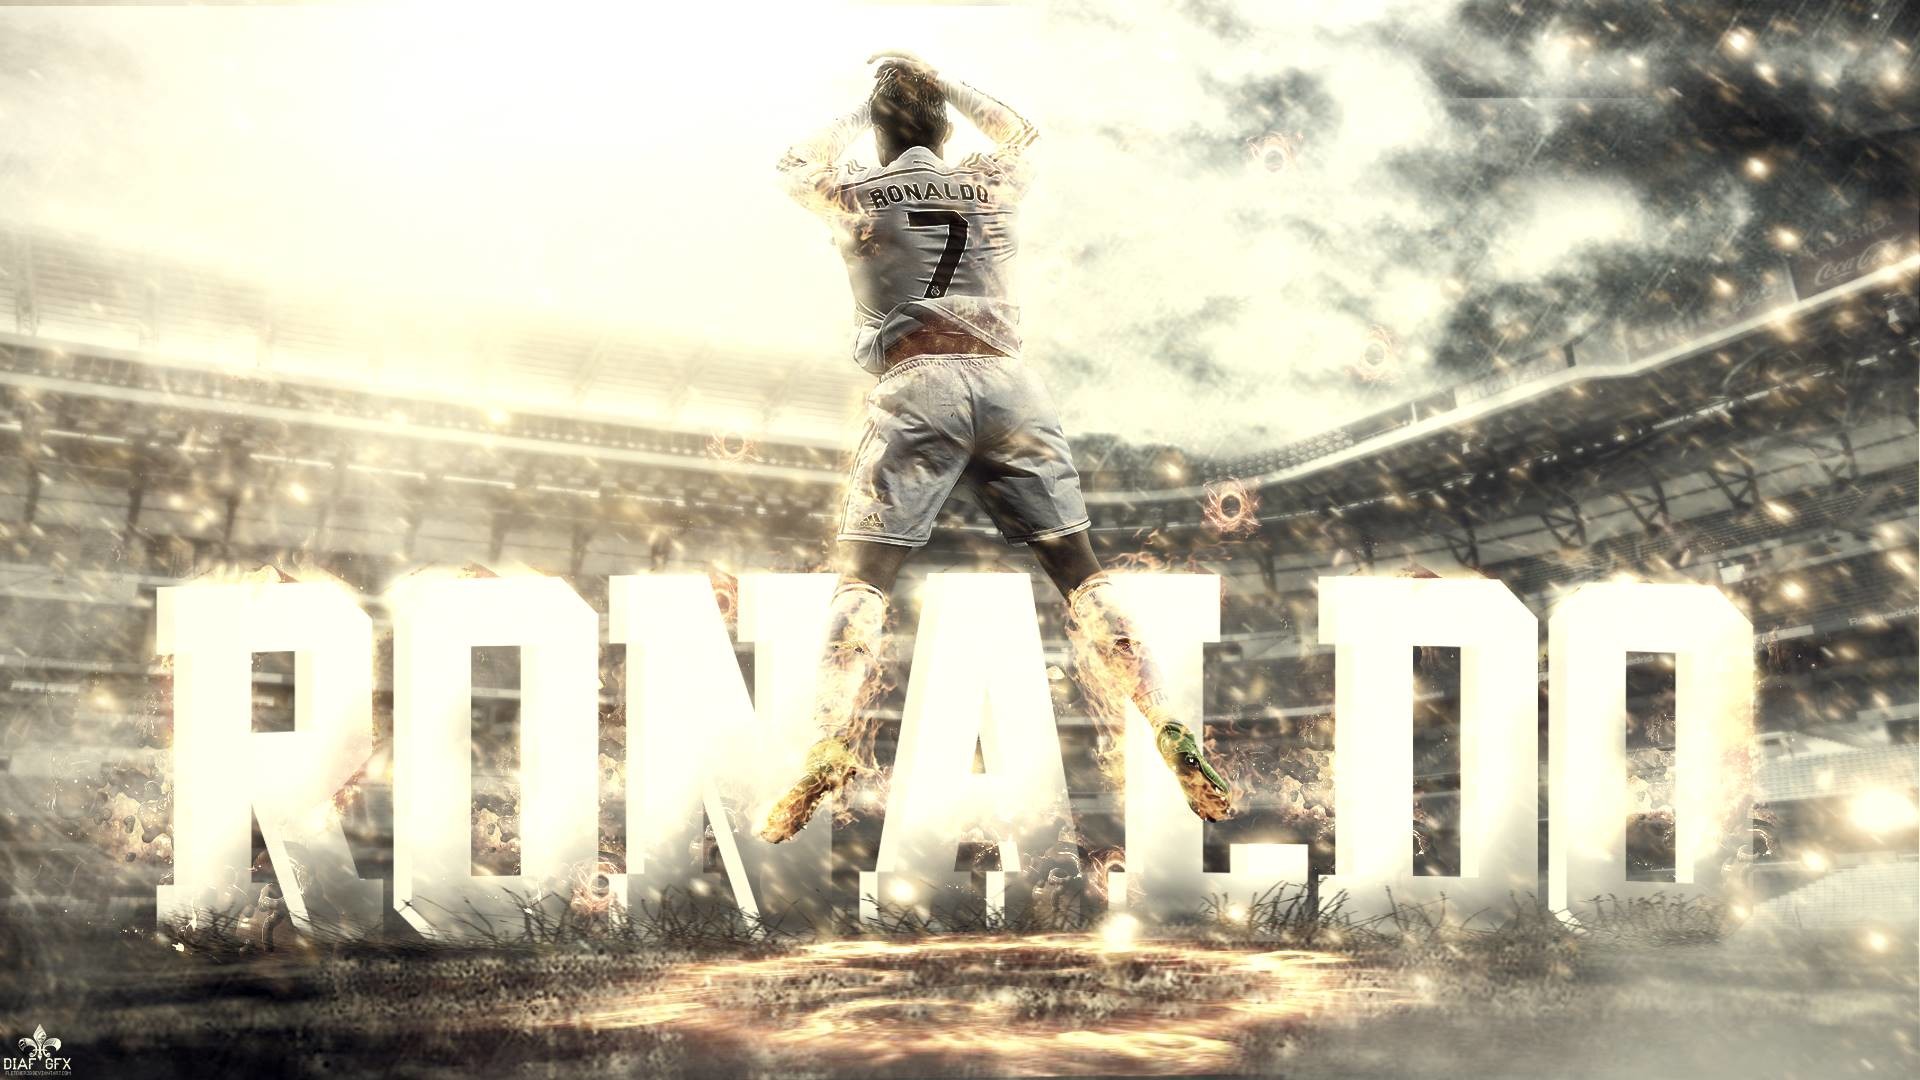 138+ CR7 HD Wallpaper 2018 - Ronaldo wallpaper: Với độc giả yêu thích bóng đá và Cristiano Ronaldo, chúng tôi giới thiệu hơn 138 hình nền độc đáo và chất lượng cao nhất năm